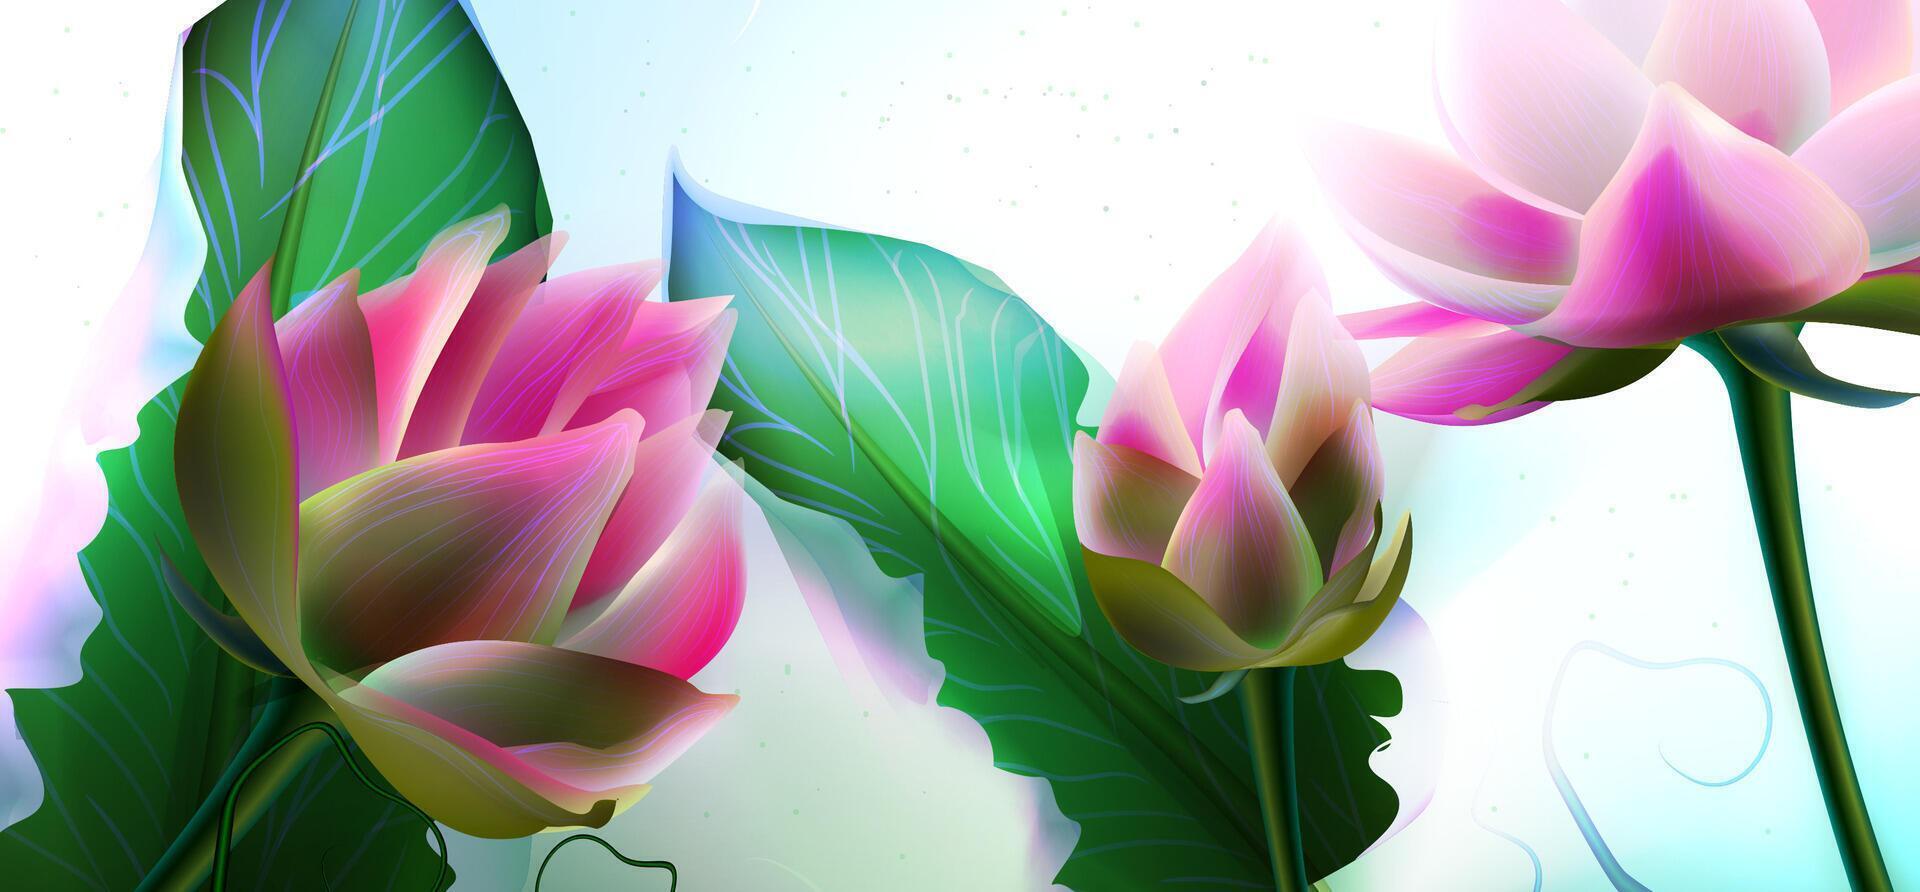 schön Rosa Lotus Blumen mit Grün Blätter schließen oben realistisch Vektor Illustration. Wasser Lilie oder Wasser- Pflanze auf Grün Stengel. blühen Blume und Öffnung Knospe von Seerose